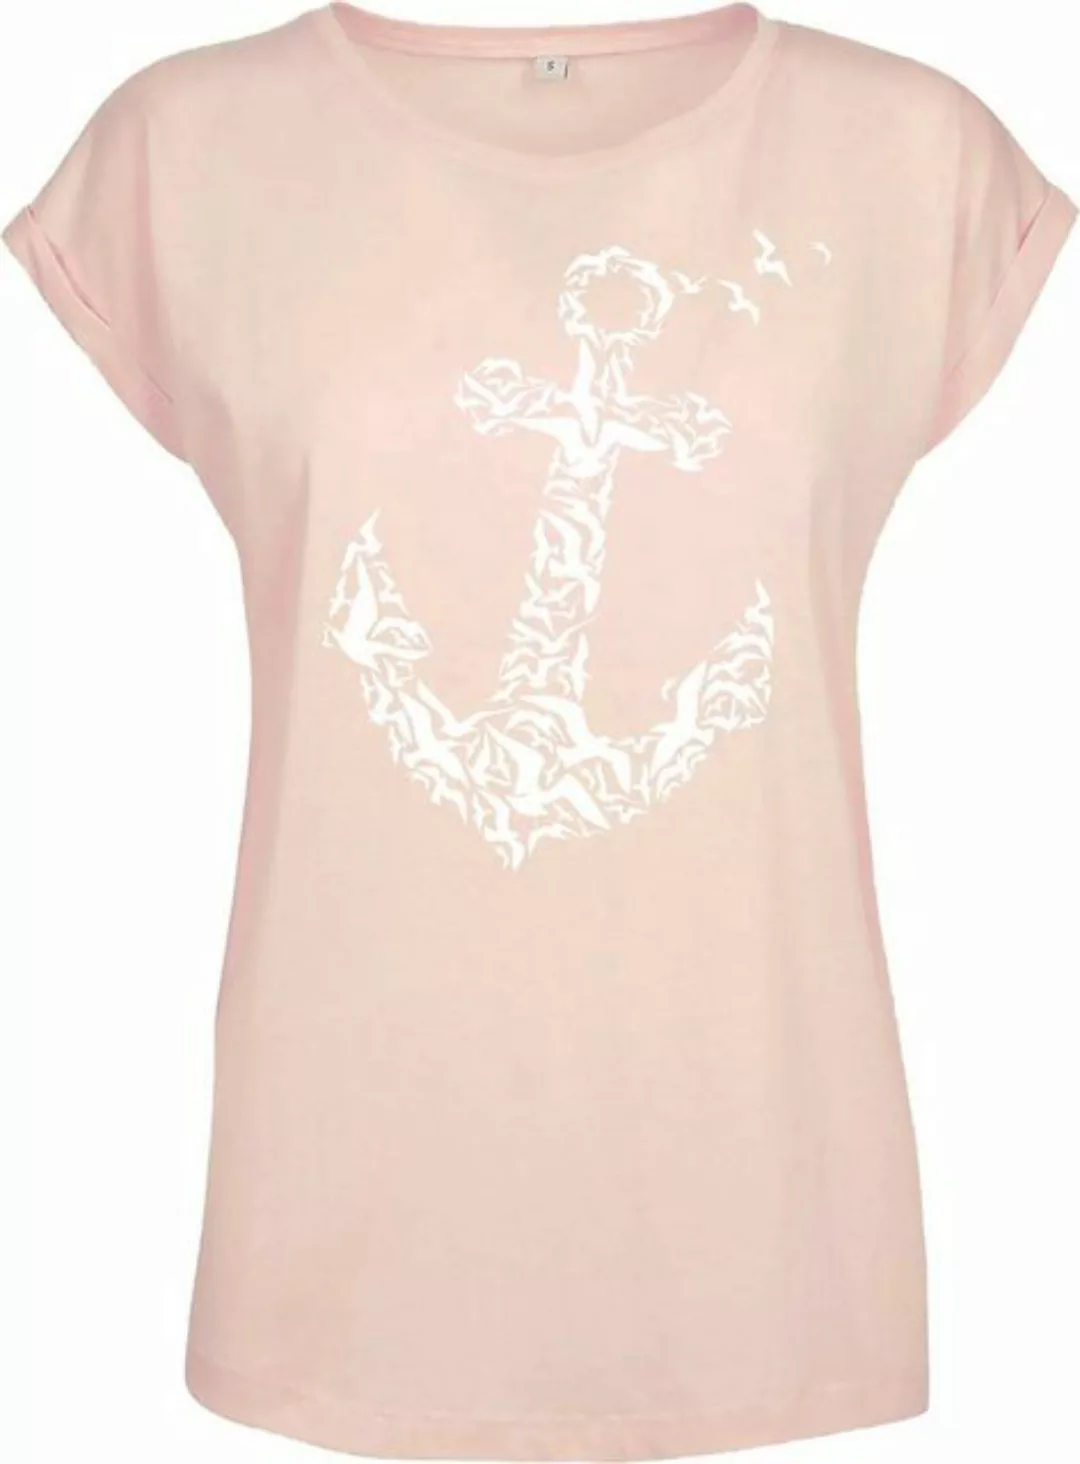 Baddery Print-Shirt Damen T-Shirt: "Anker" (Loose Fit) - Segeln Meer See Ka günstig online kaufen